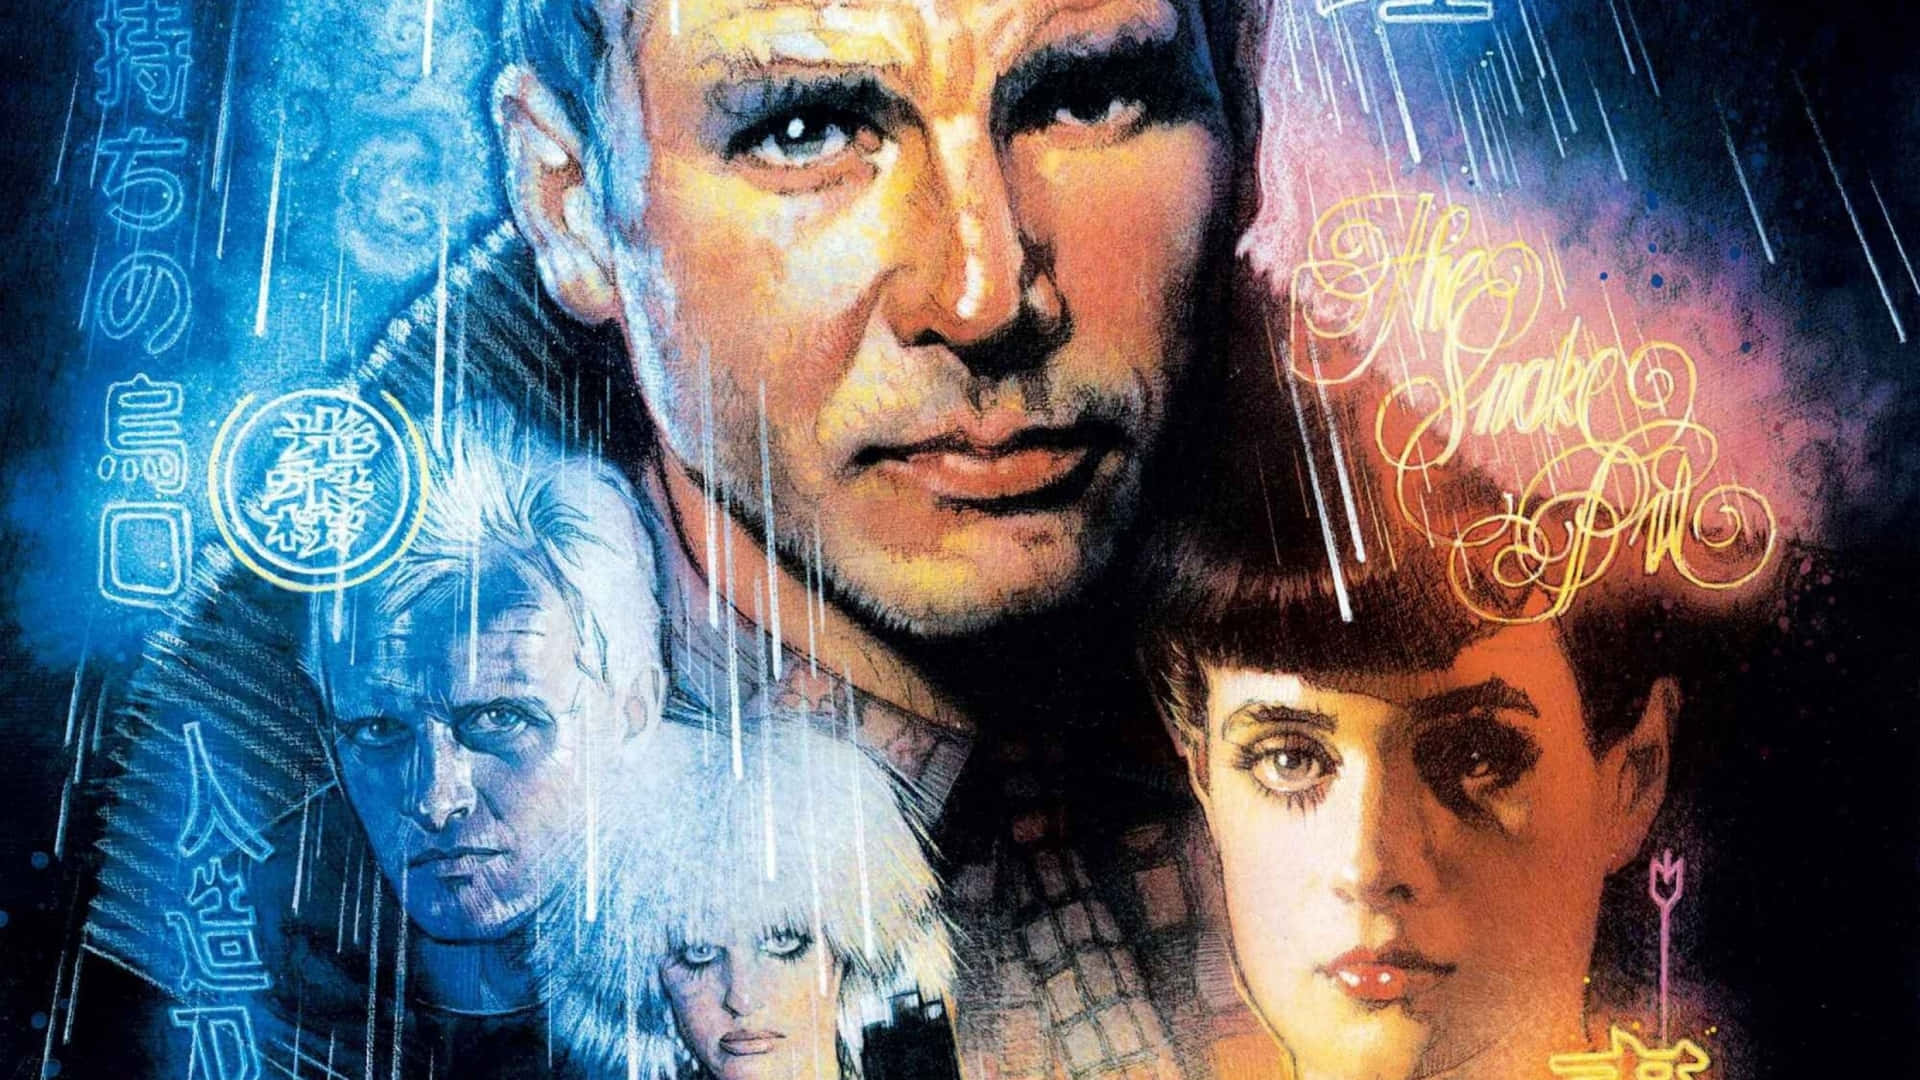 Replikantenund Menschen Existieren In Einer Unbehaglichen Koexistenz In Blade Runner.